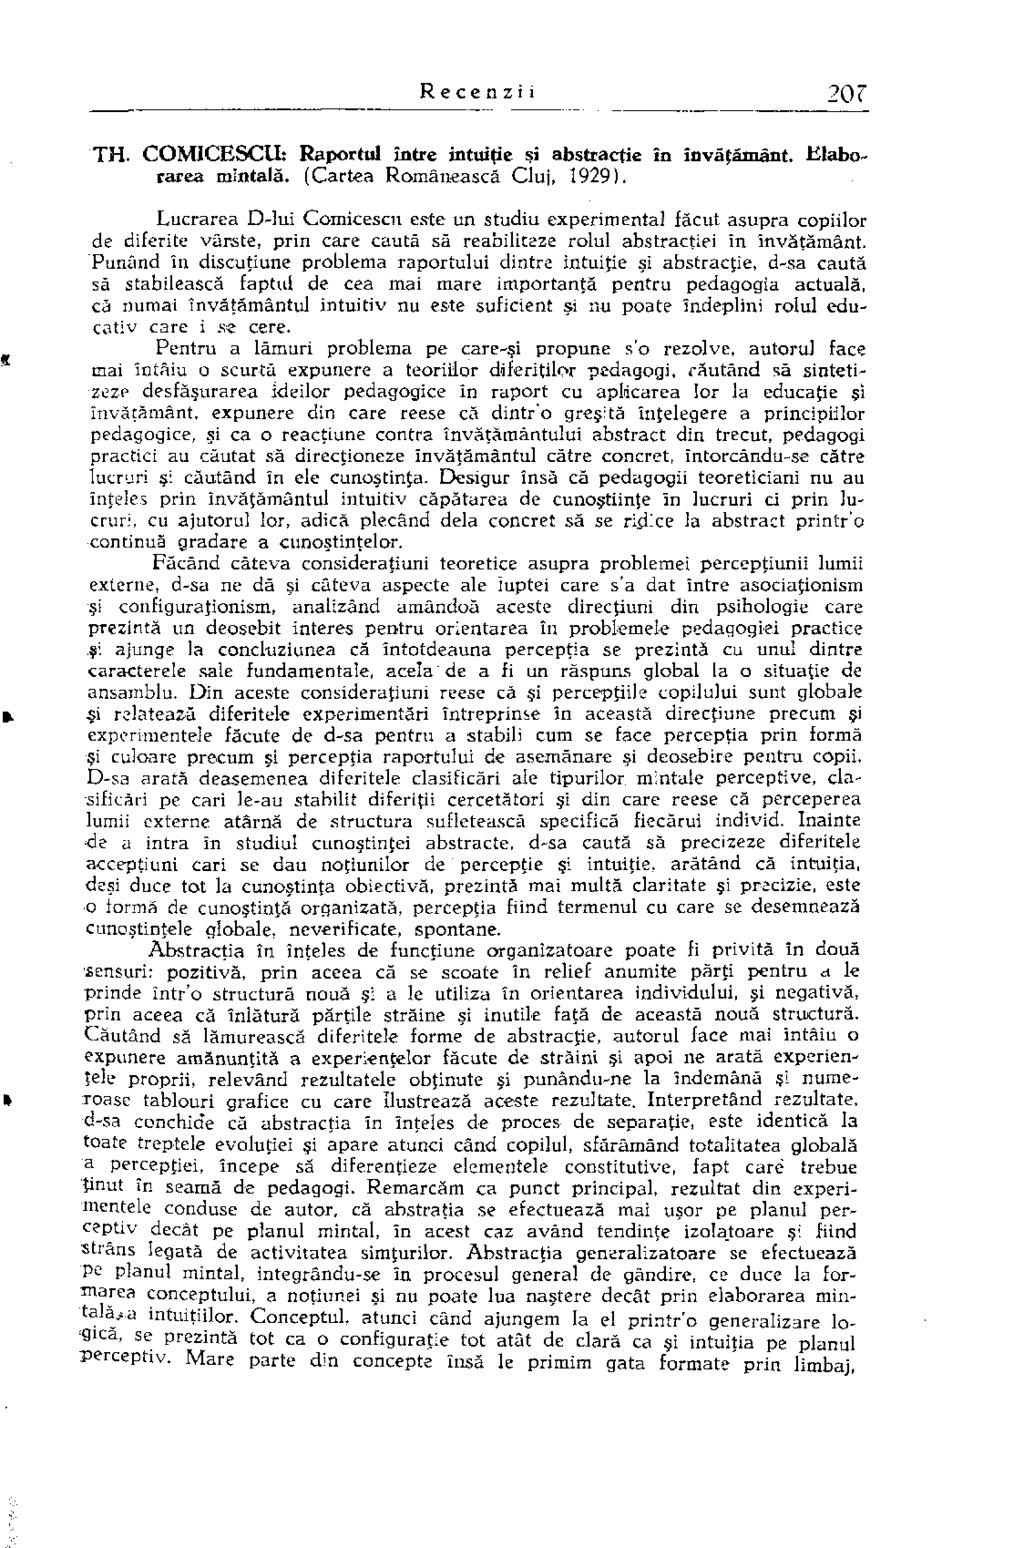 TH. COMICESCU: Raportul între intuiţie şi abstracţie în învăţământ. Elaborarea mintală. (Cartea Românească Cluj, 1929).